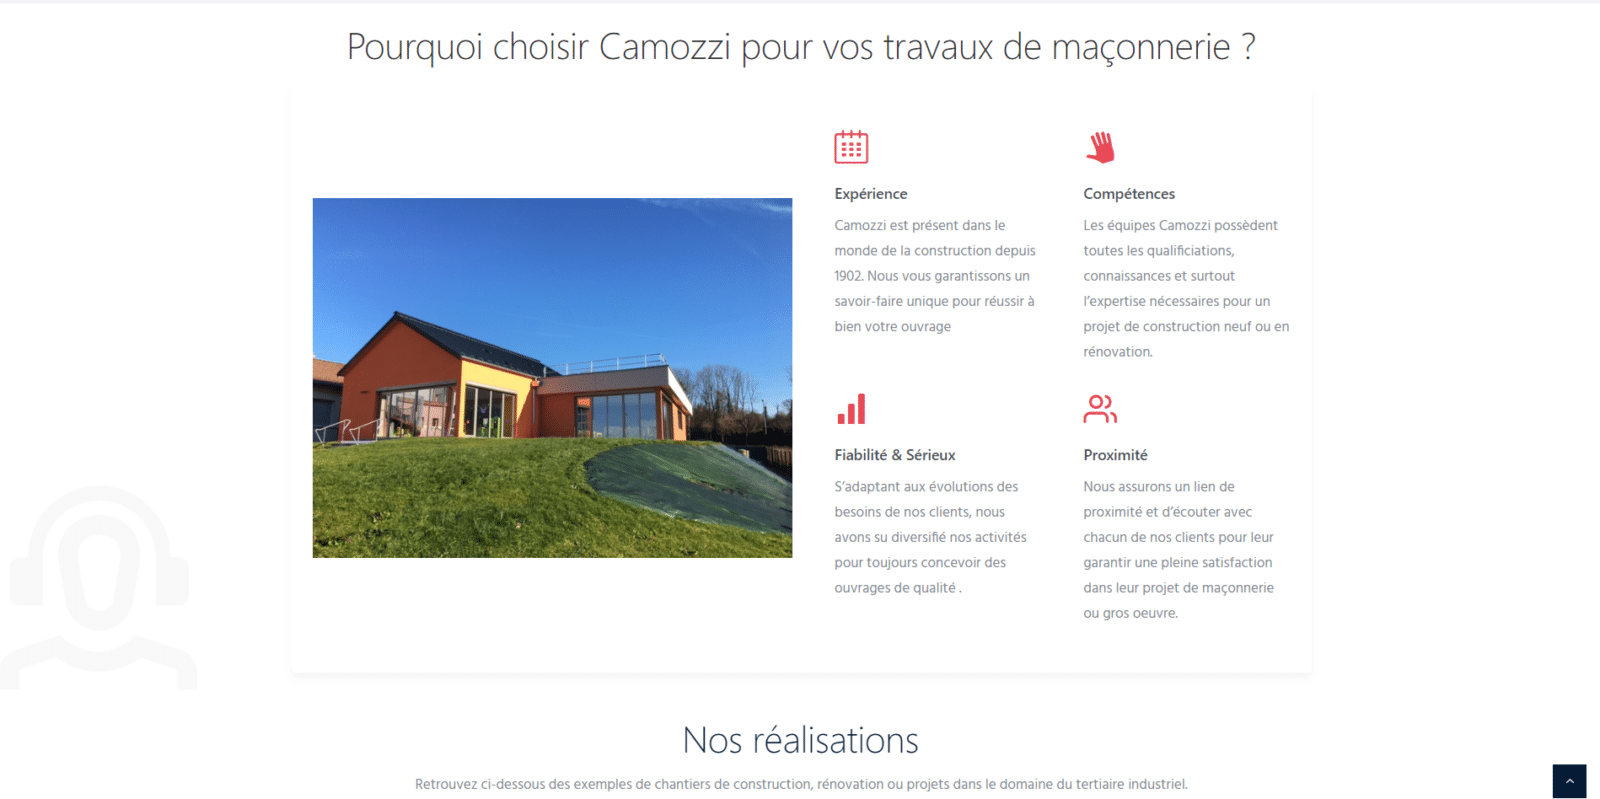 Camozzi est un client de l'agence web Karedess, agence web situé à Mulhouse